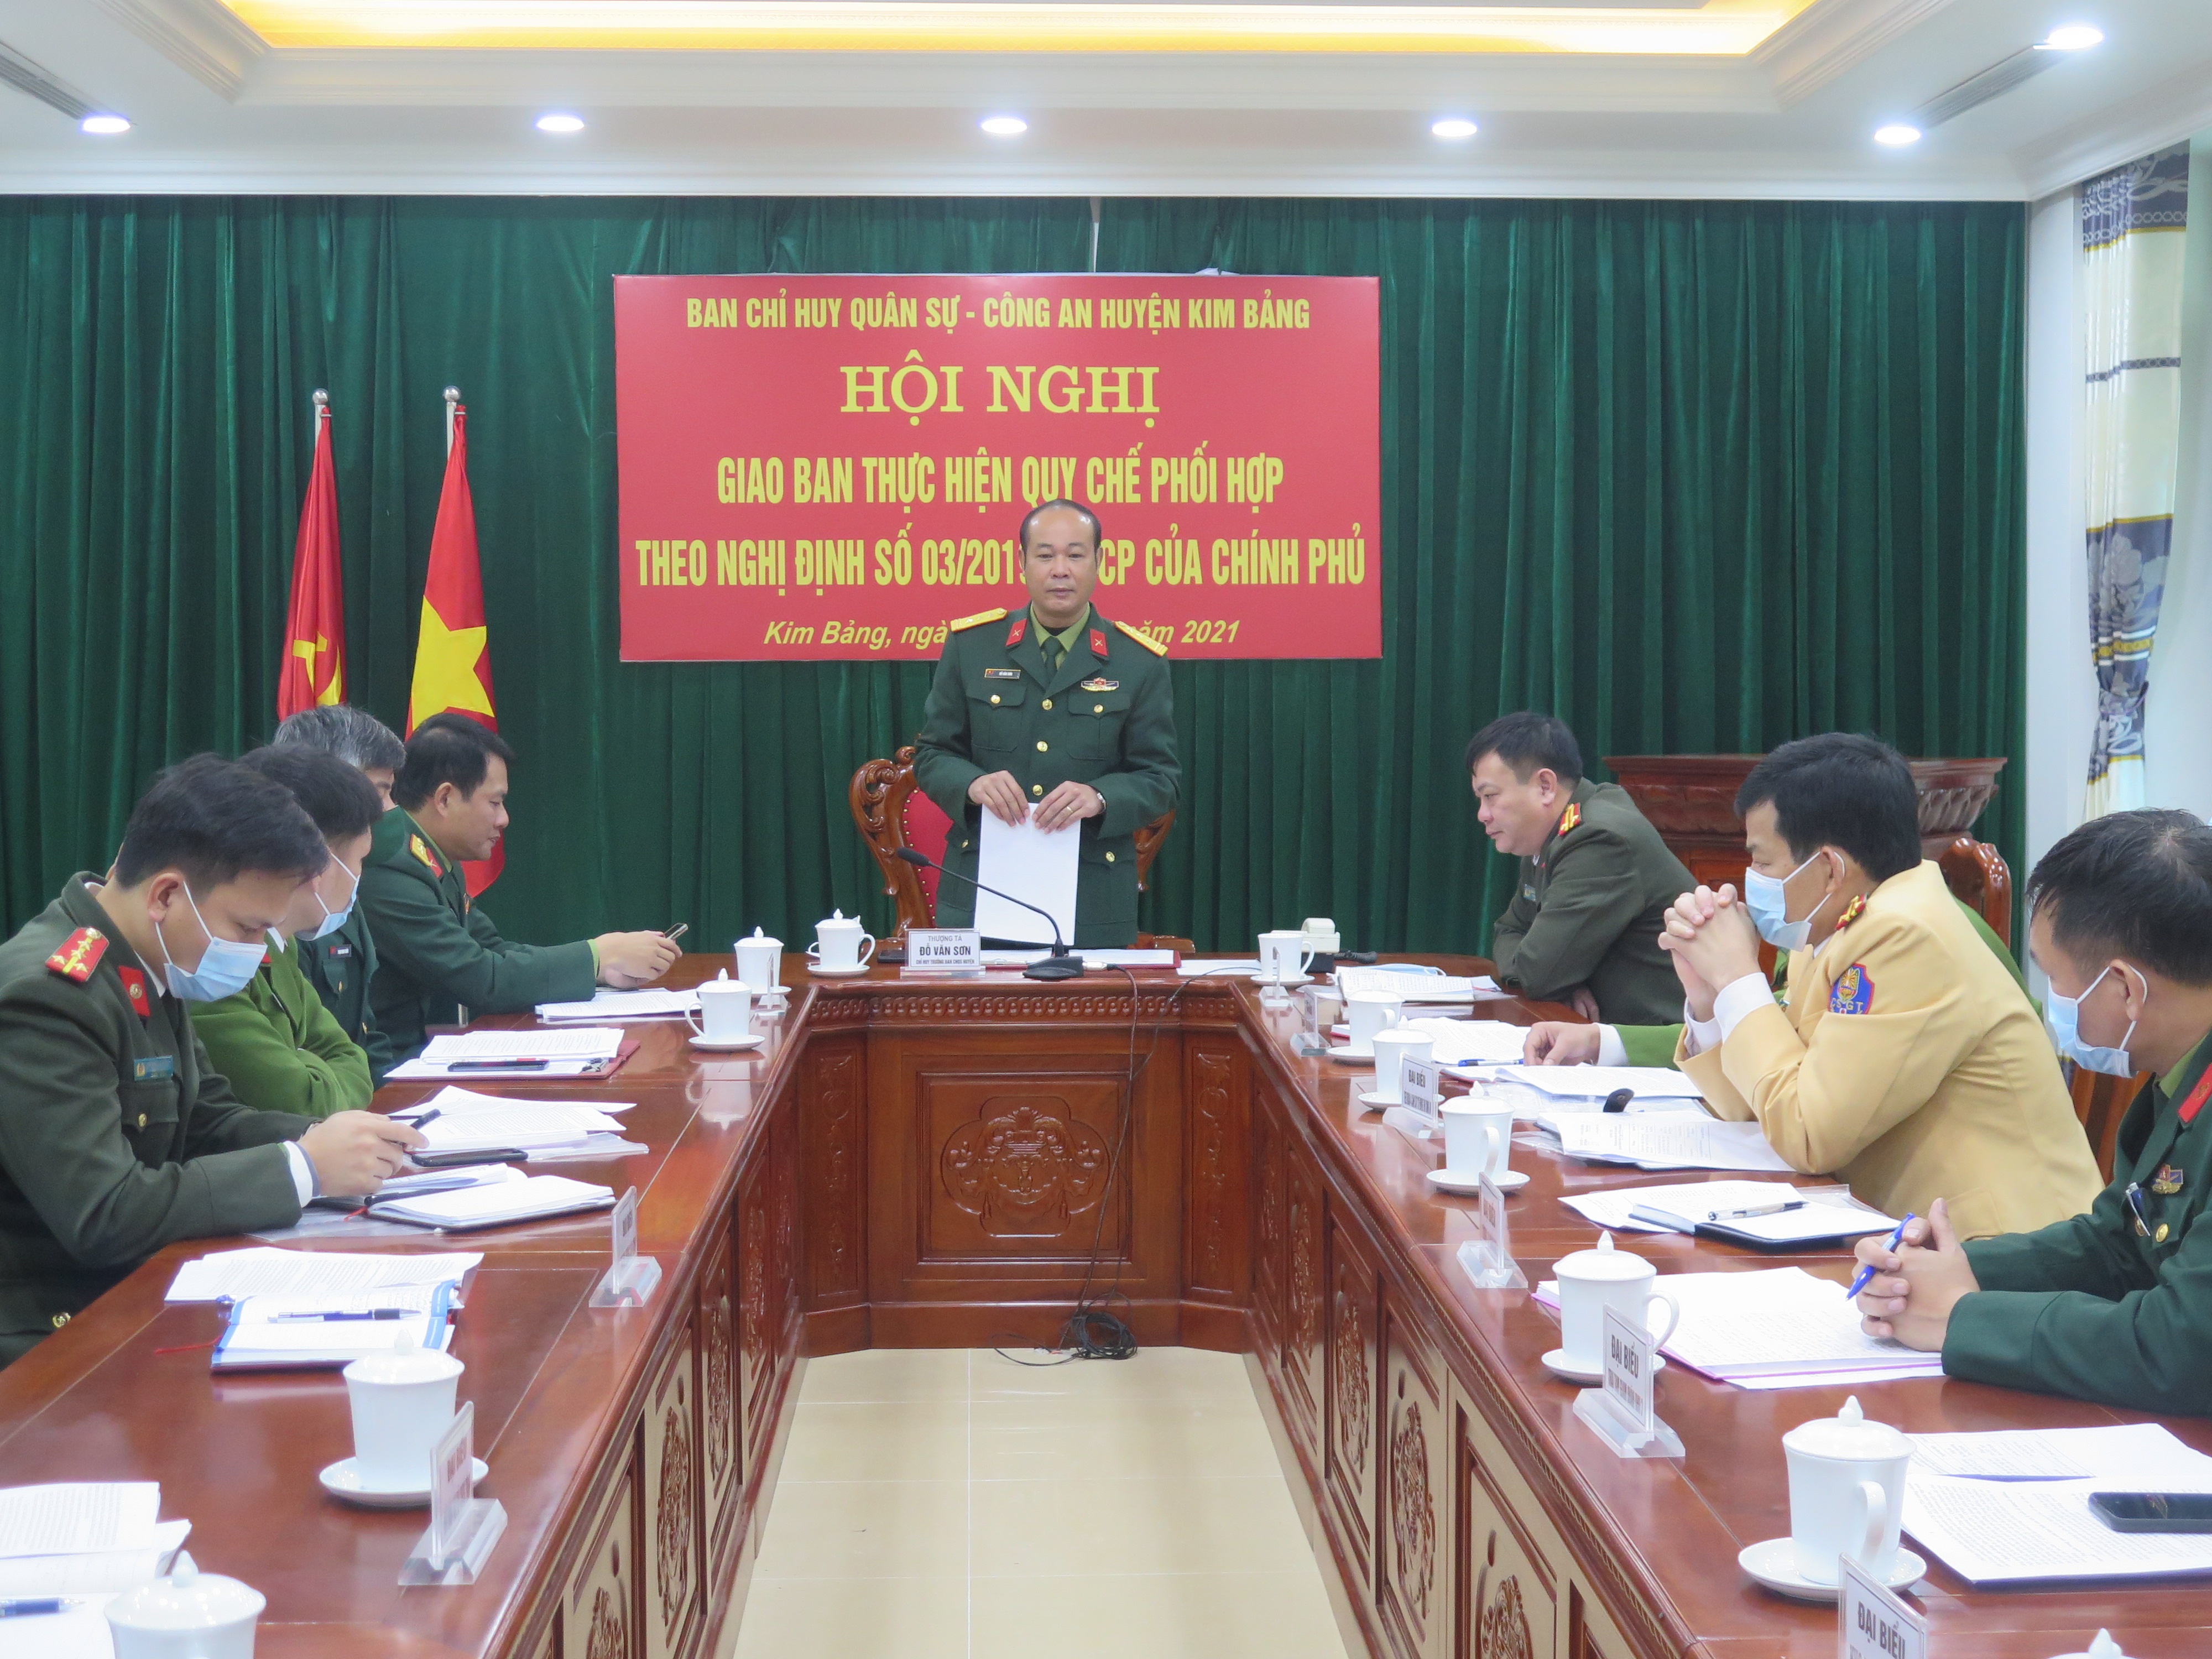 Hội nghị đánh giá kết quả công tác phối hợp giữa 2 ngành quân sự - công an huyện Kim Bảng.jpg